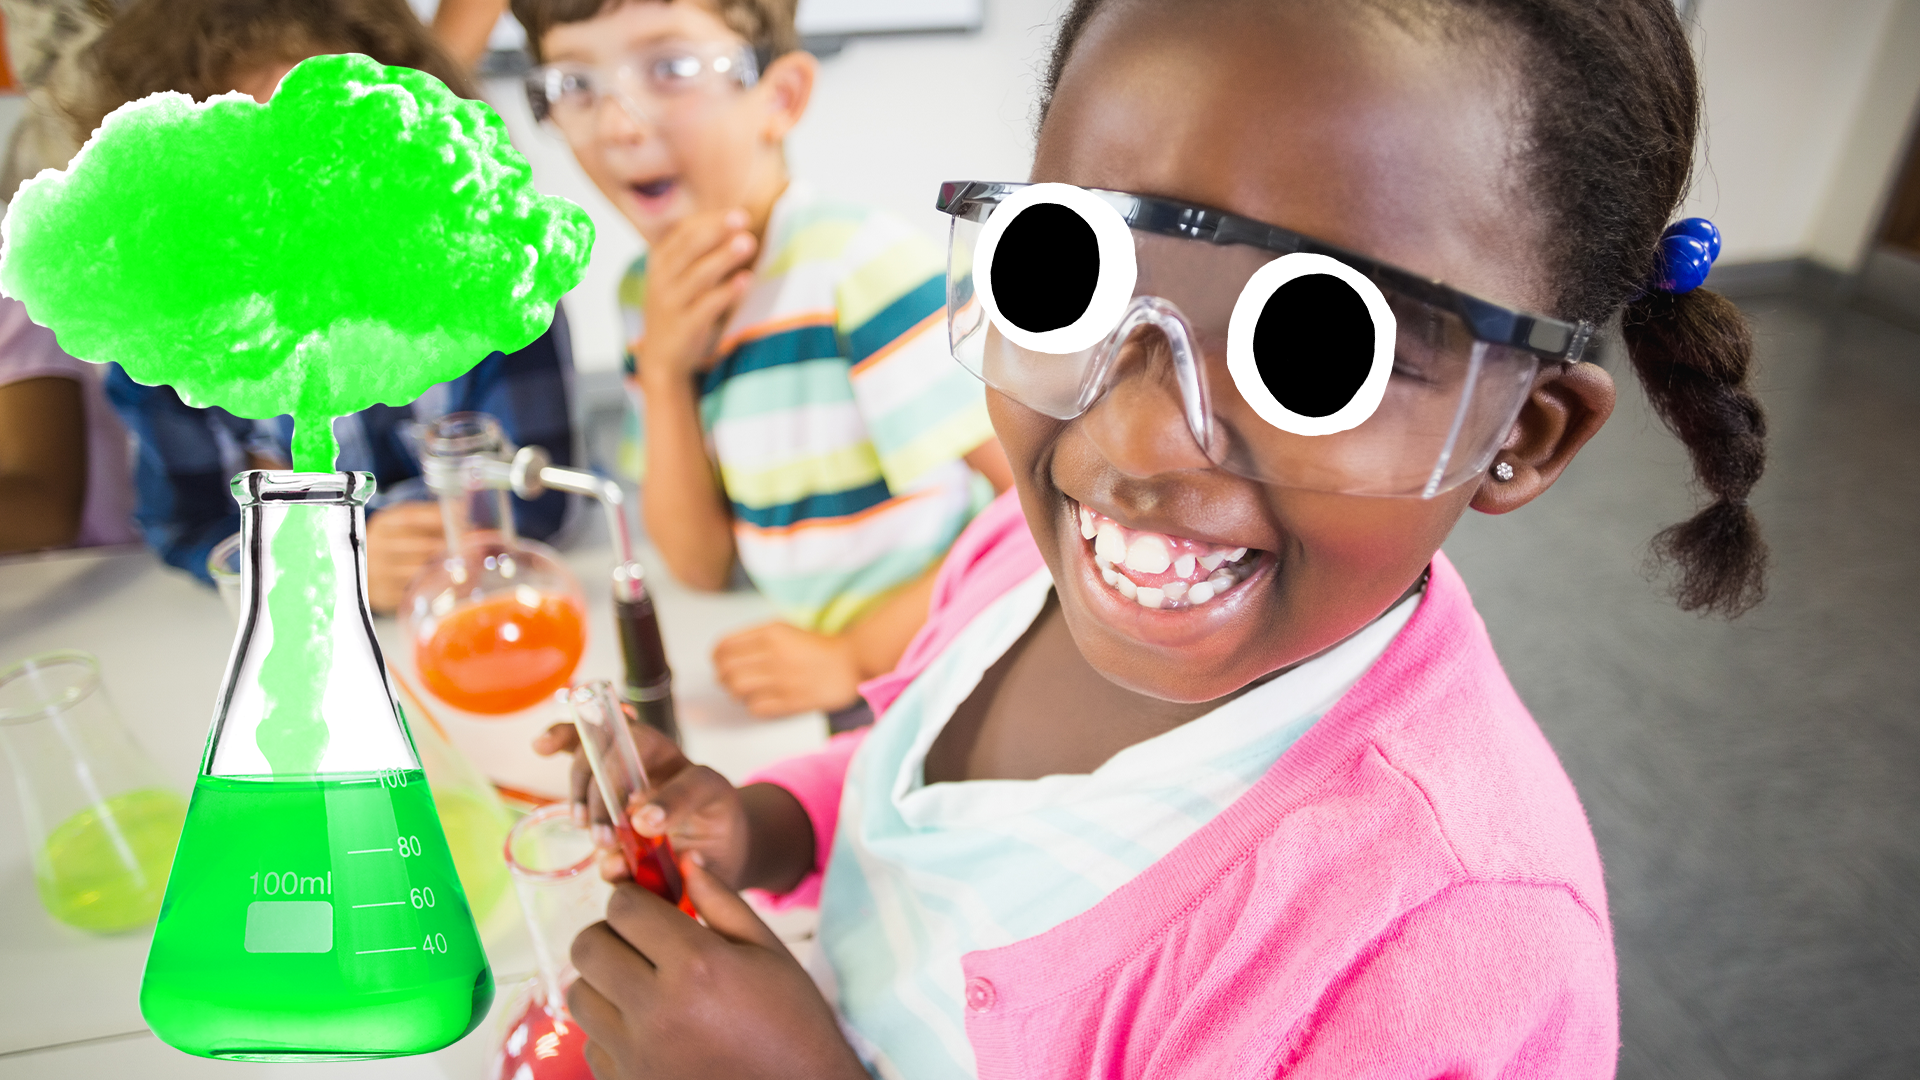 Children doing science with beaker full of green liquid